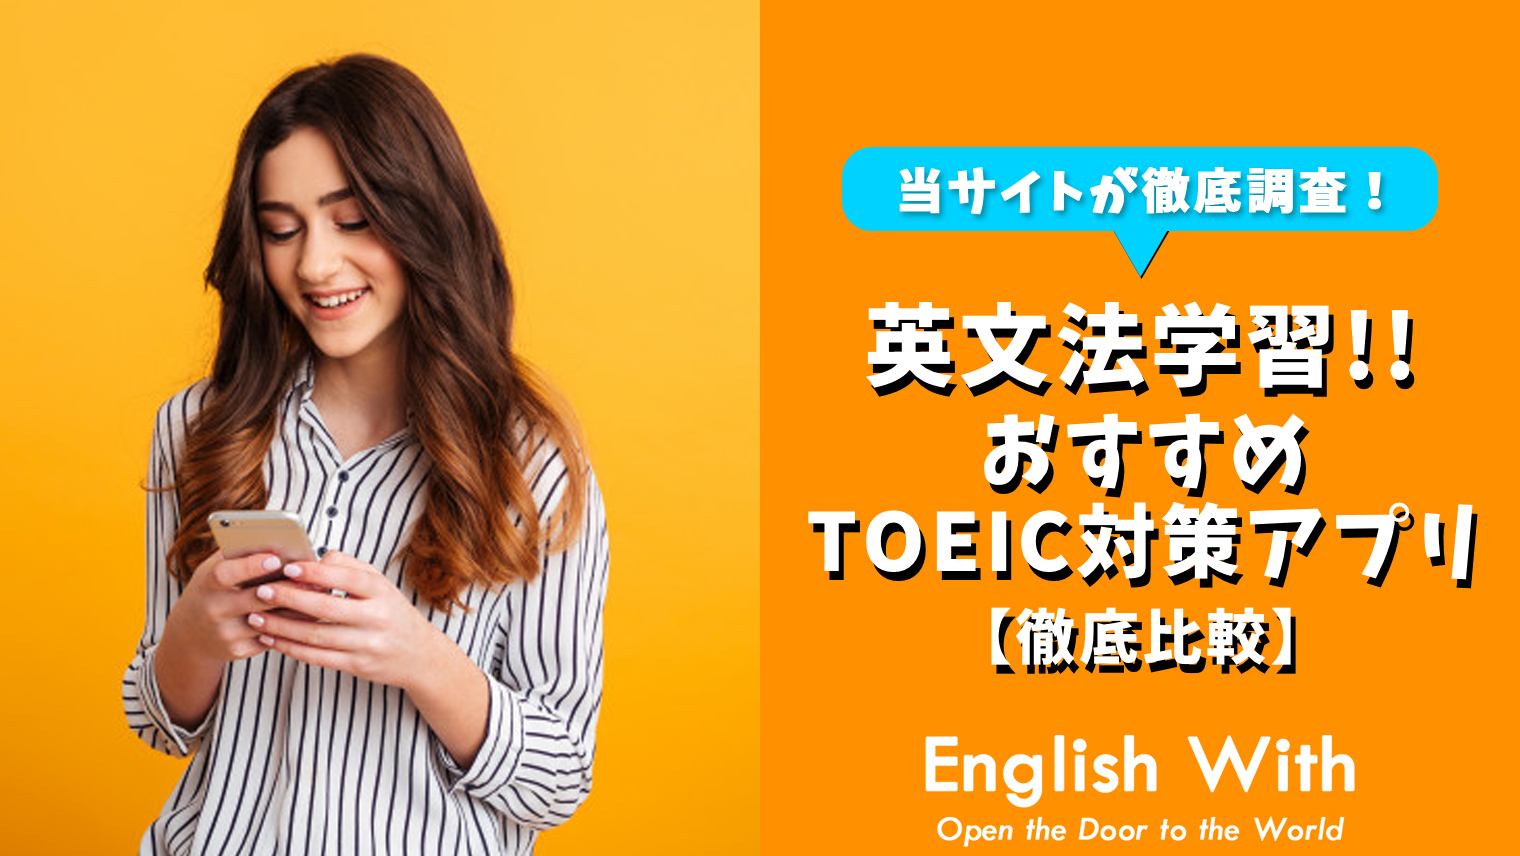 Toeicで必要な英文法が学べる おすすめ英語学習アプリを紹介 8選 英語学習メディアenglish With